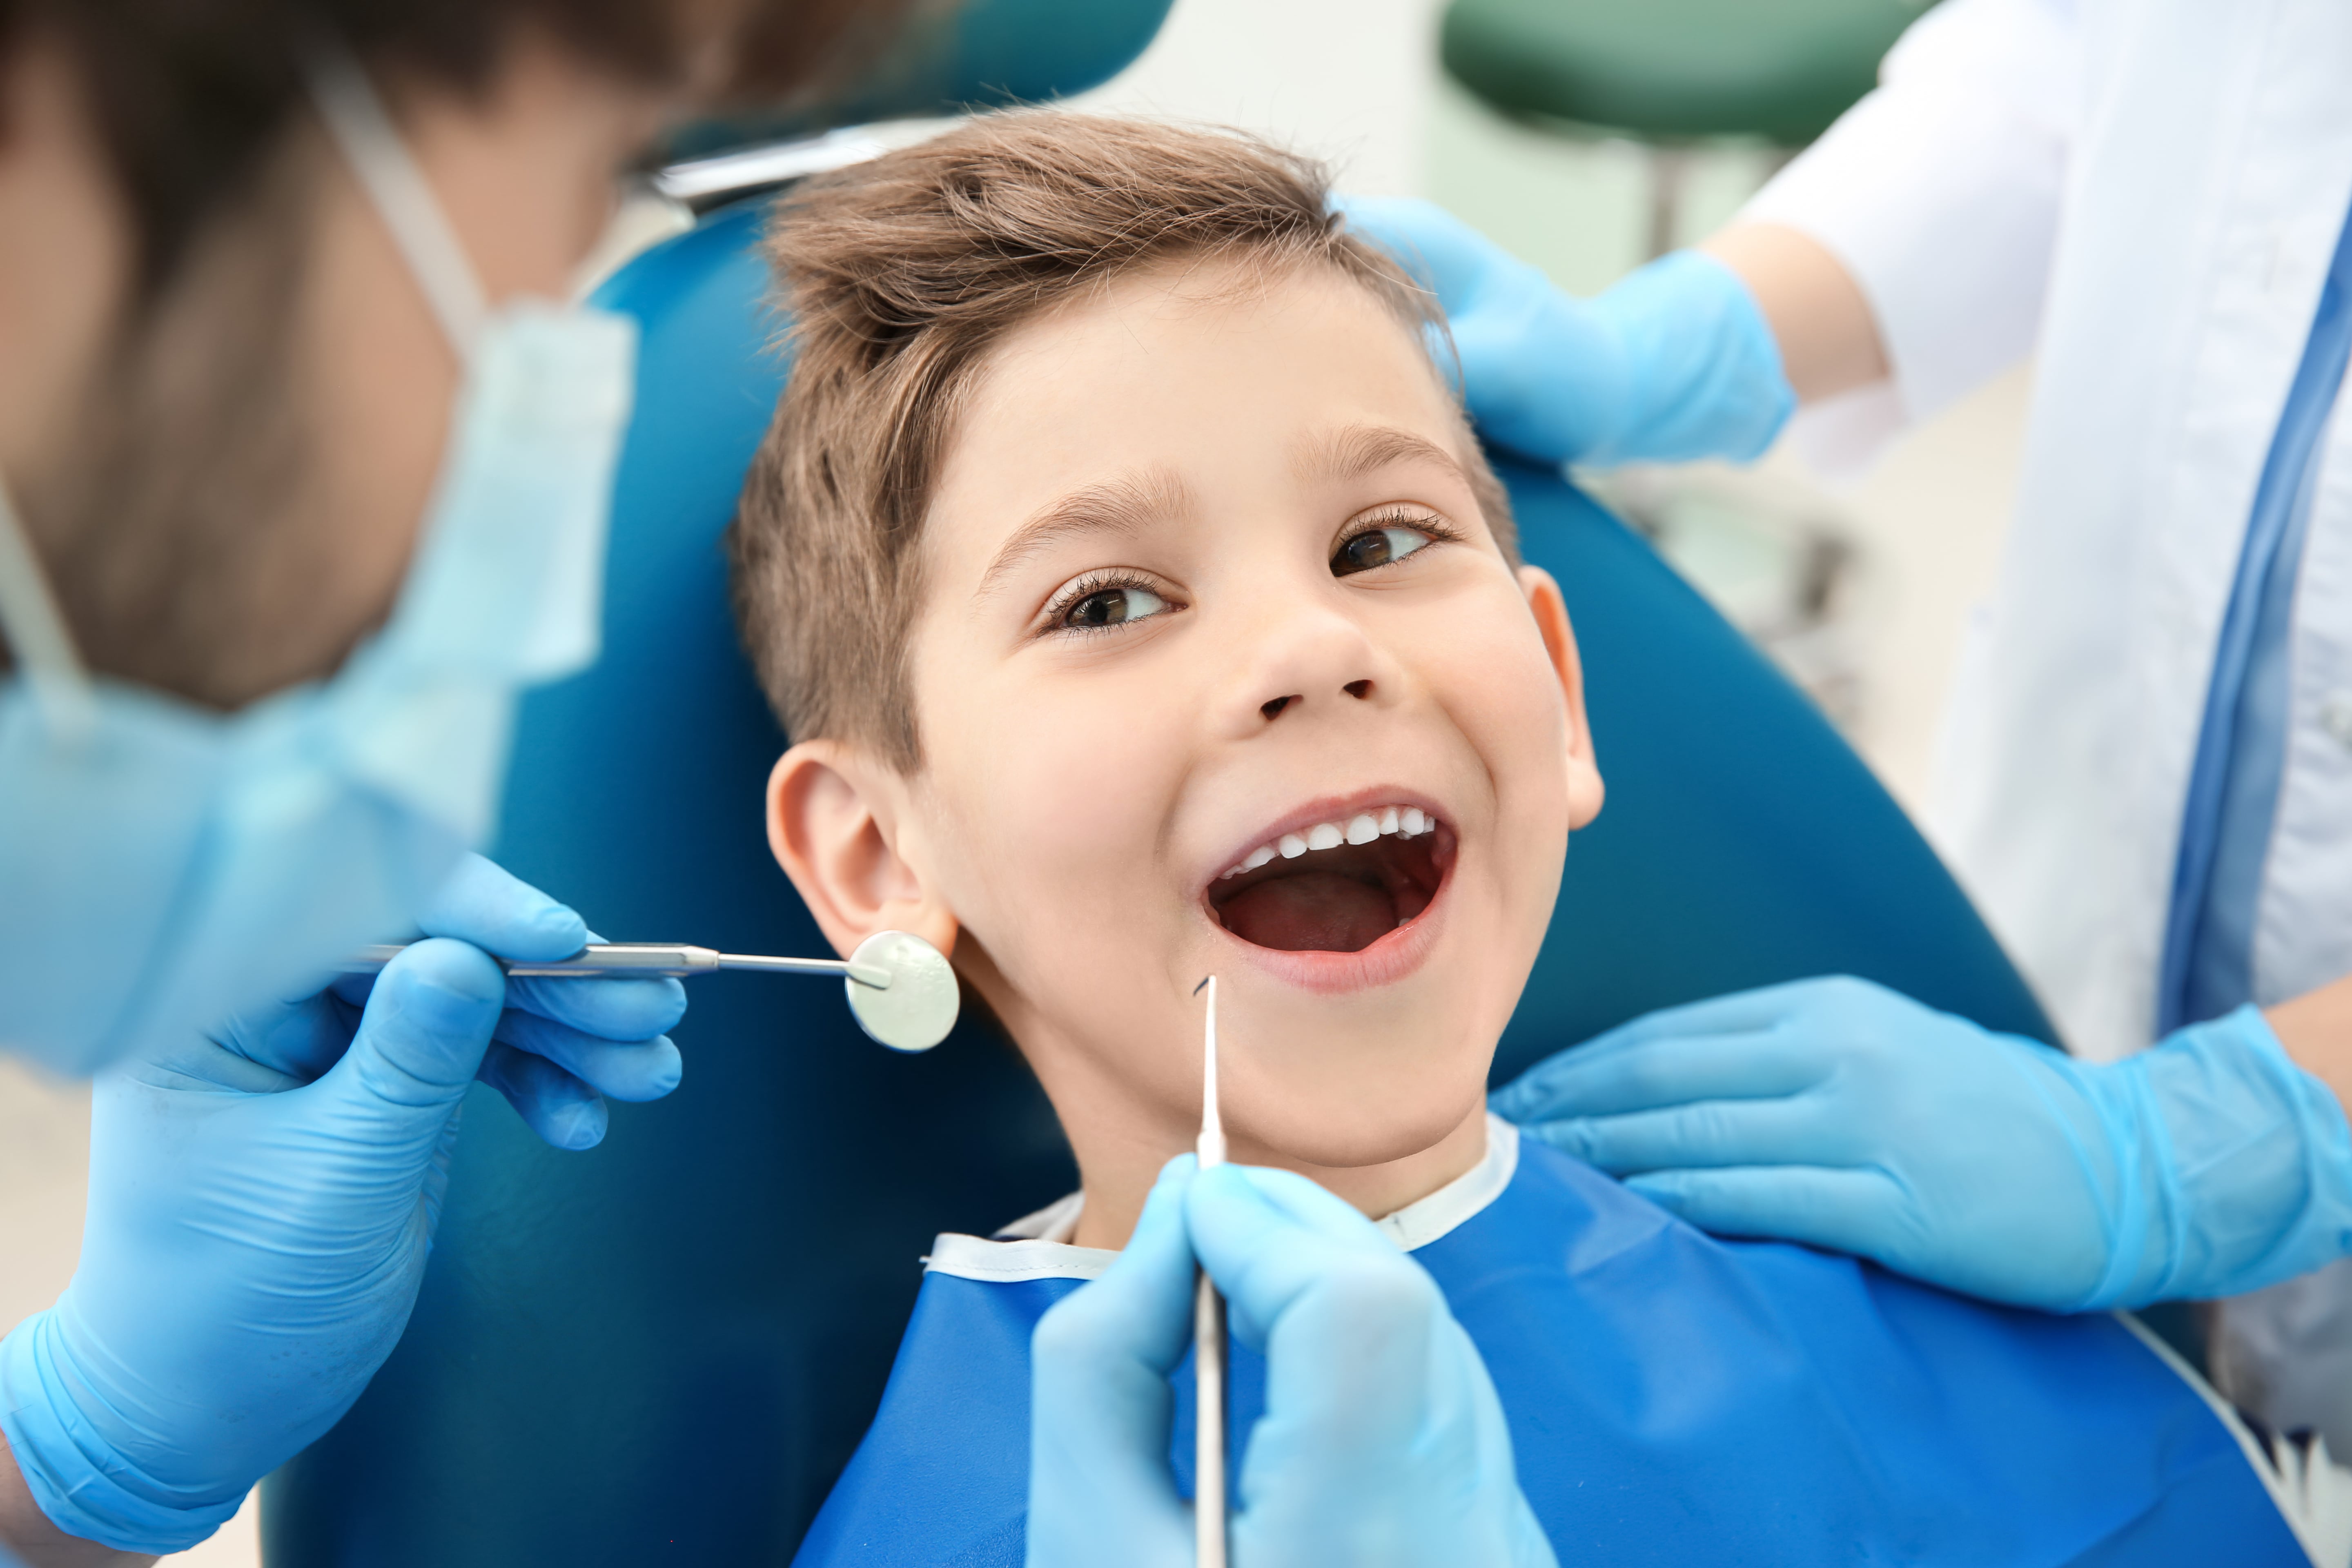 children's dentist visit video